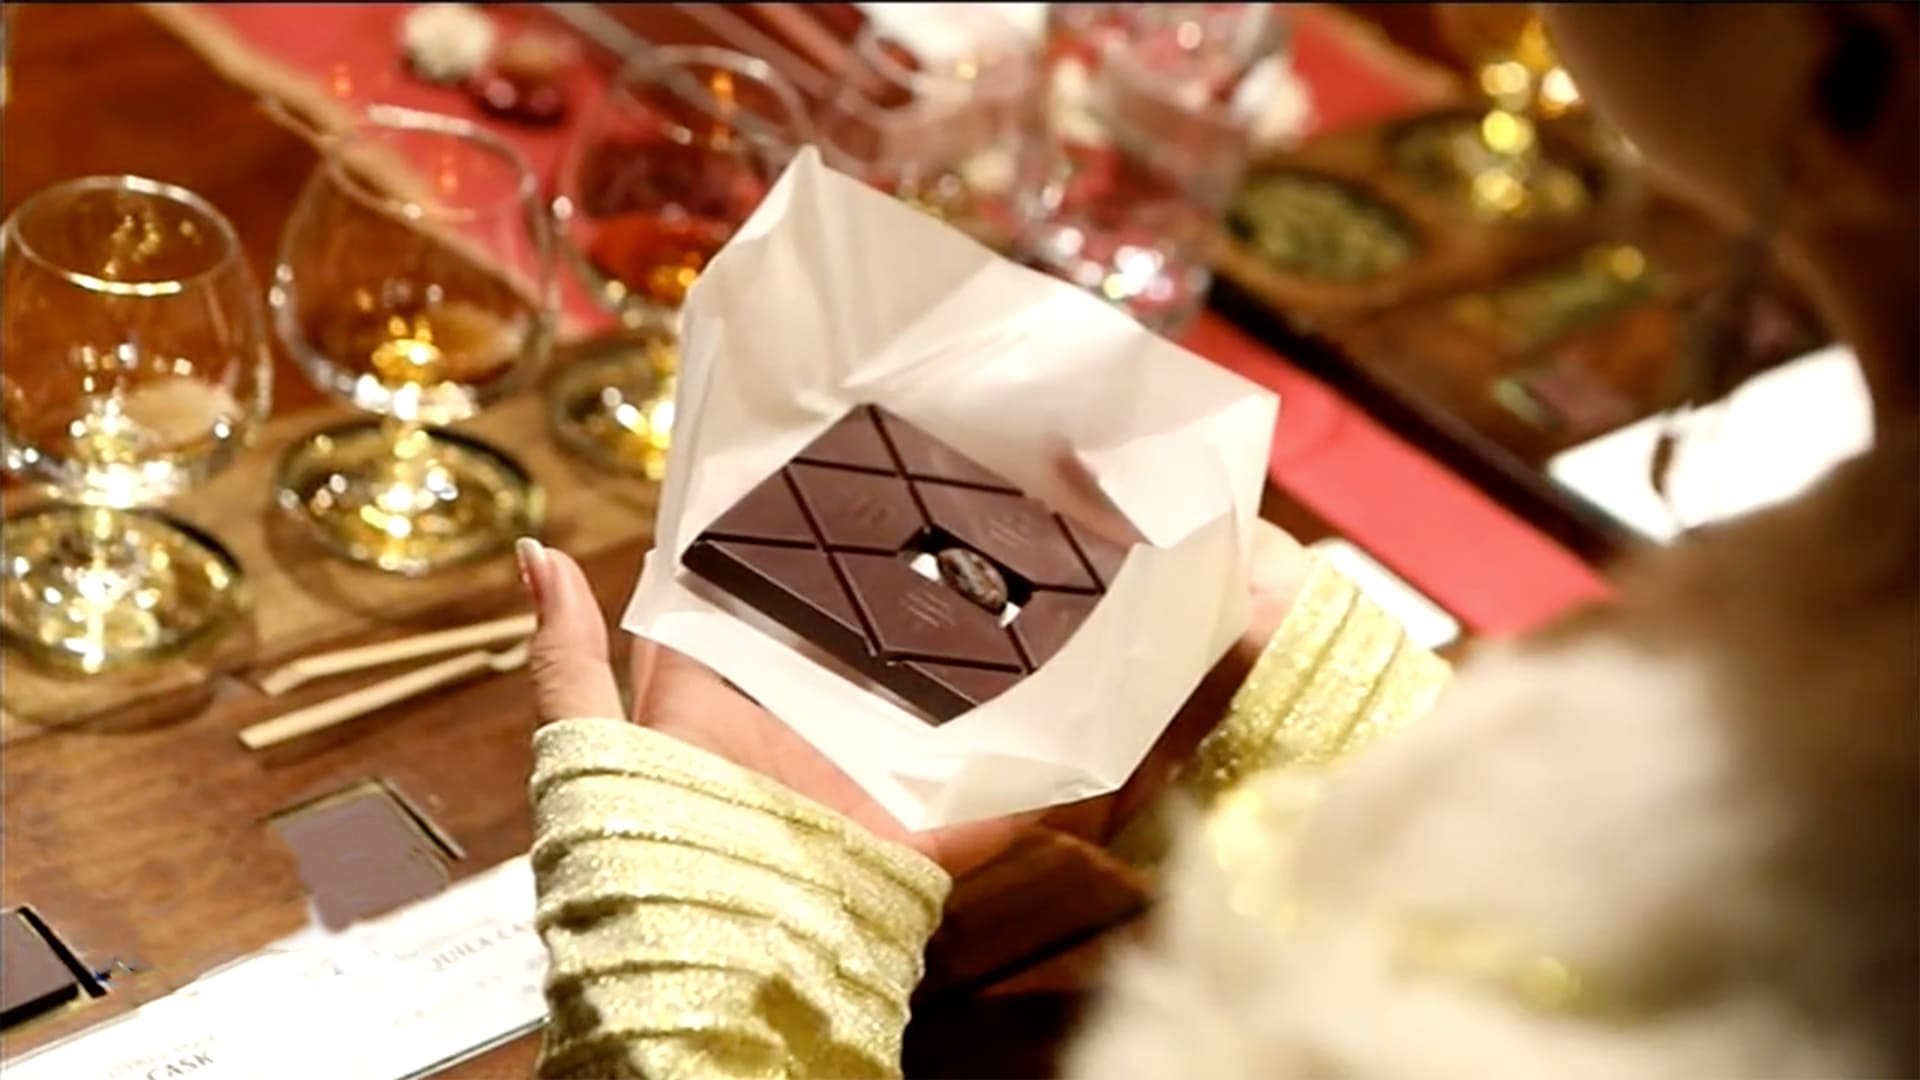 Được bán với mức giá 450 USD (hơn 10 triệu VND), To’ak chocolate đã soán ngôi thanh socola đen nguyên chất đắt nhất thế giới hiện nay.